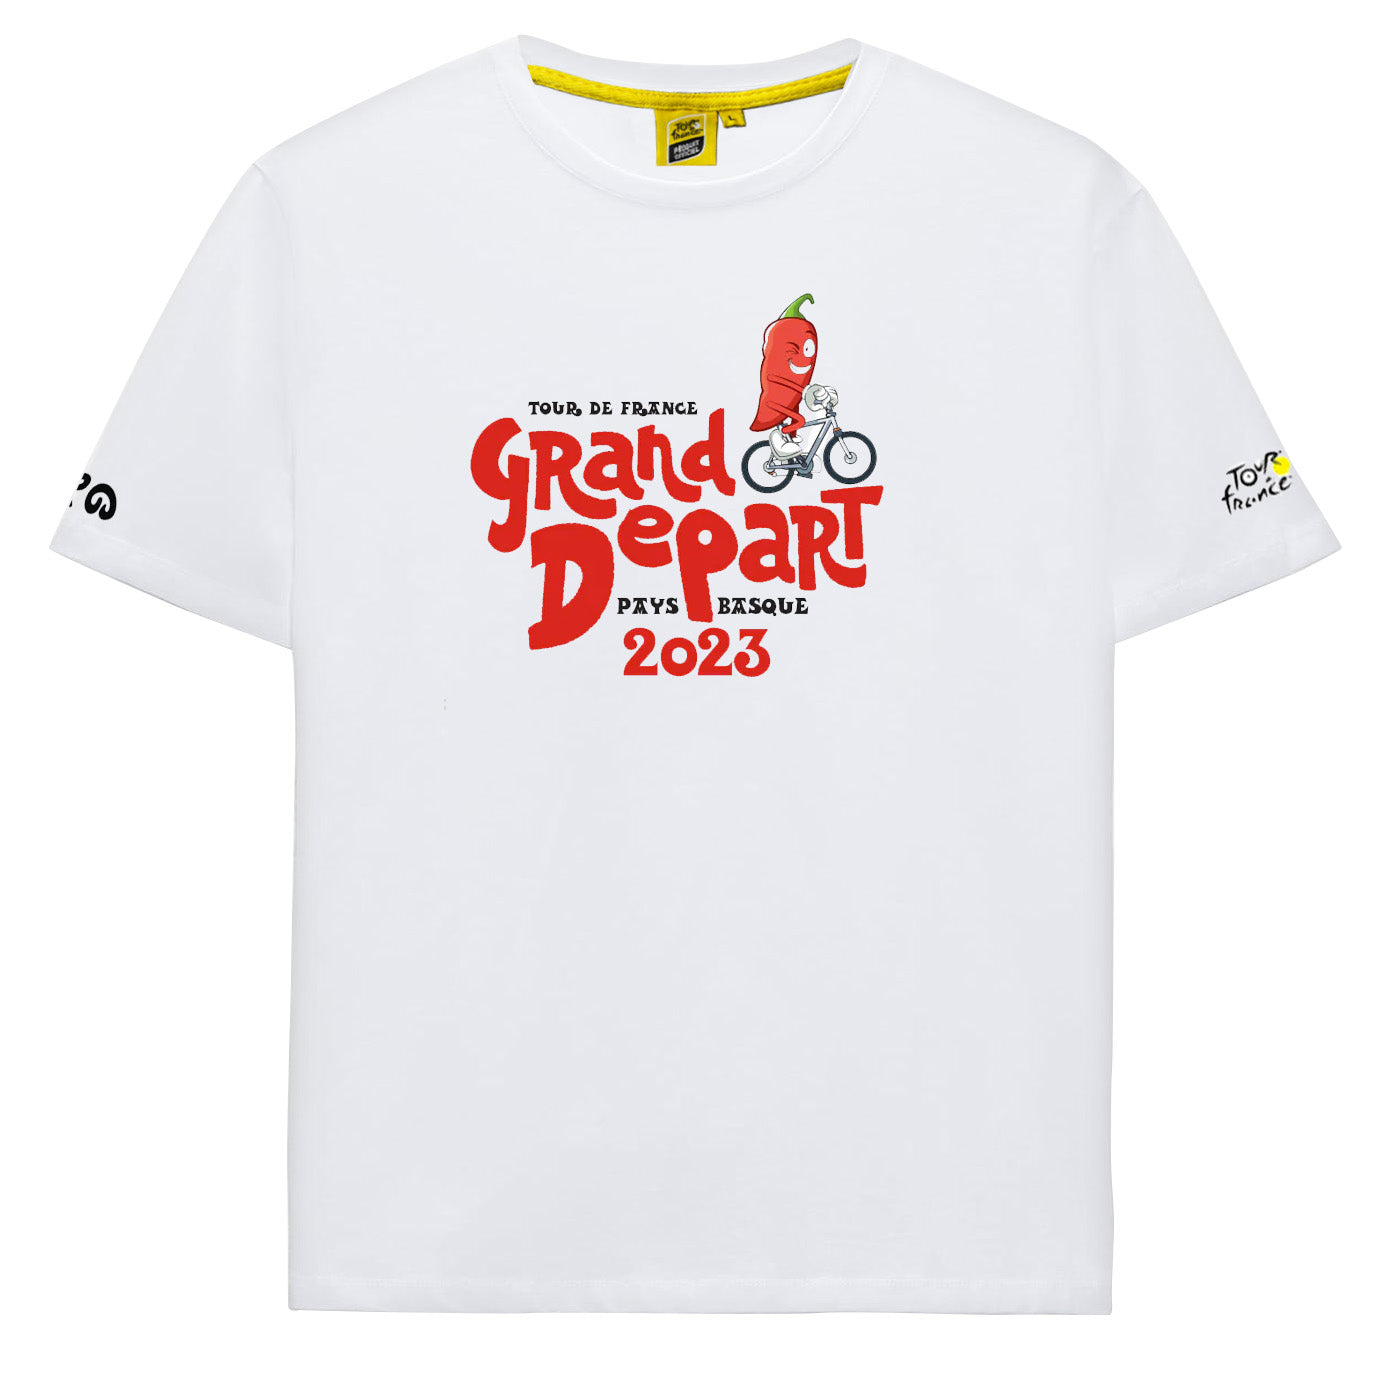 Tour de France 2023 kinder t-shirt - Grand Depart Euskadi